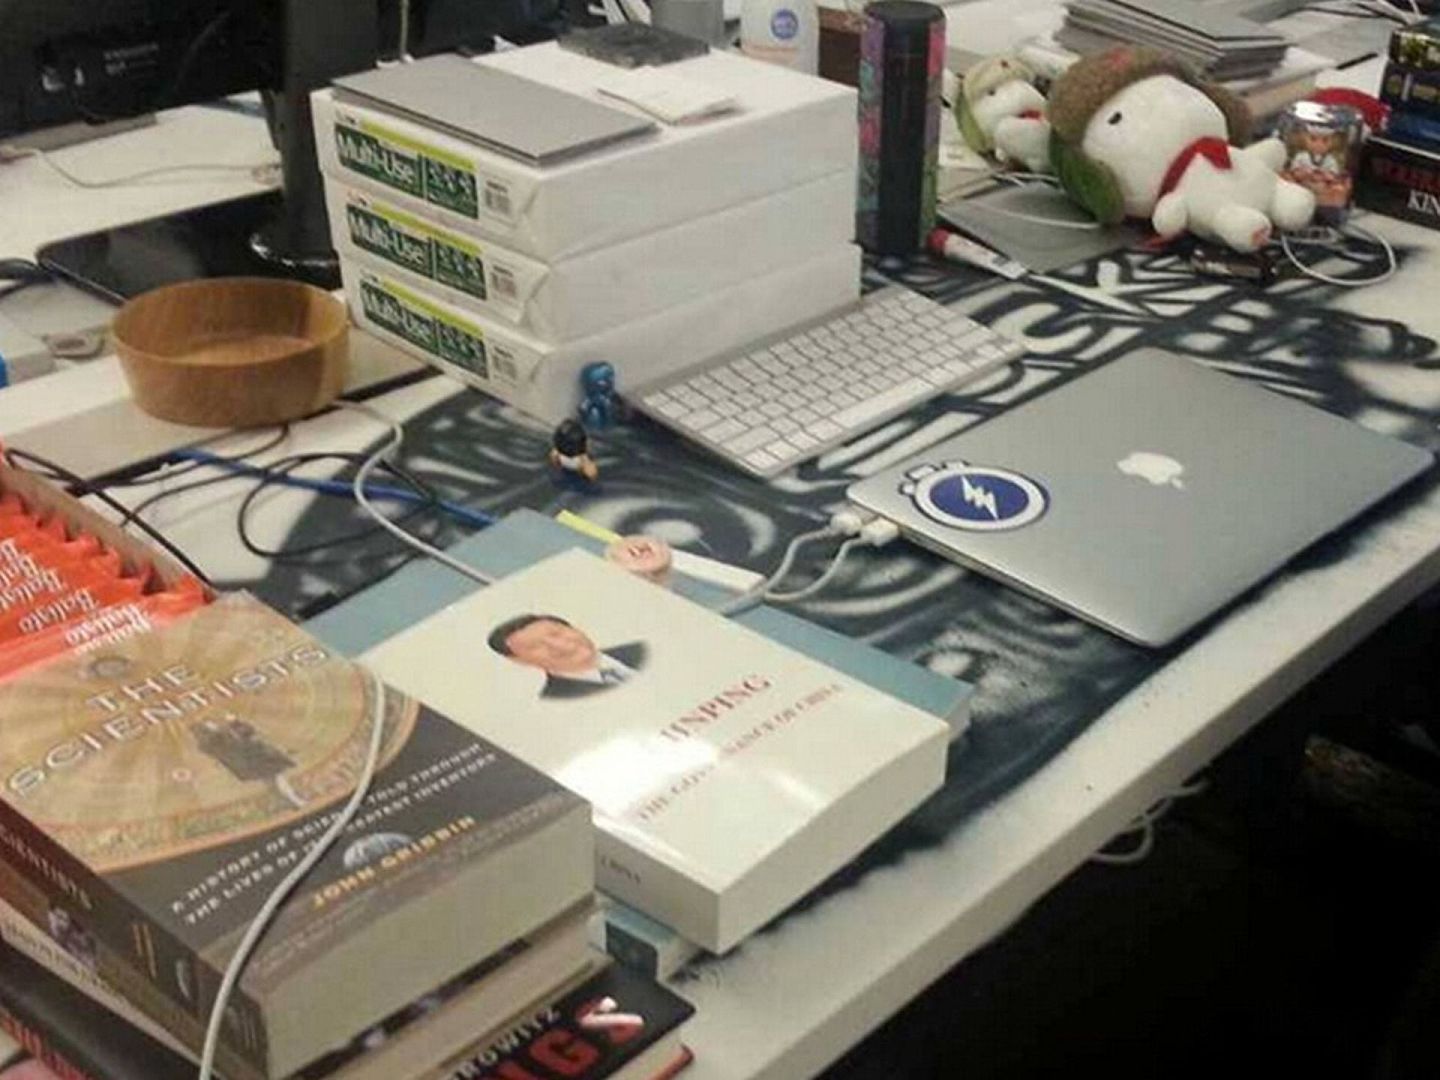 2014年12月8日，扎克伯格在脸书上晒出了办公桌照片，桌上的《习近平谈治国理政》（英文版）很是吸睛。（Facebook@Mark Zuckerberg）